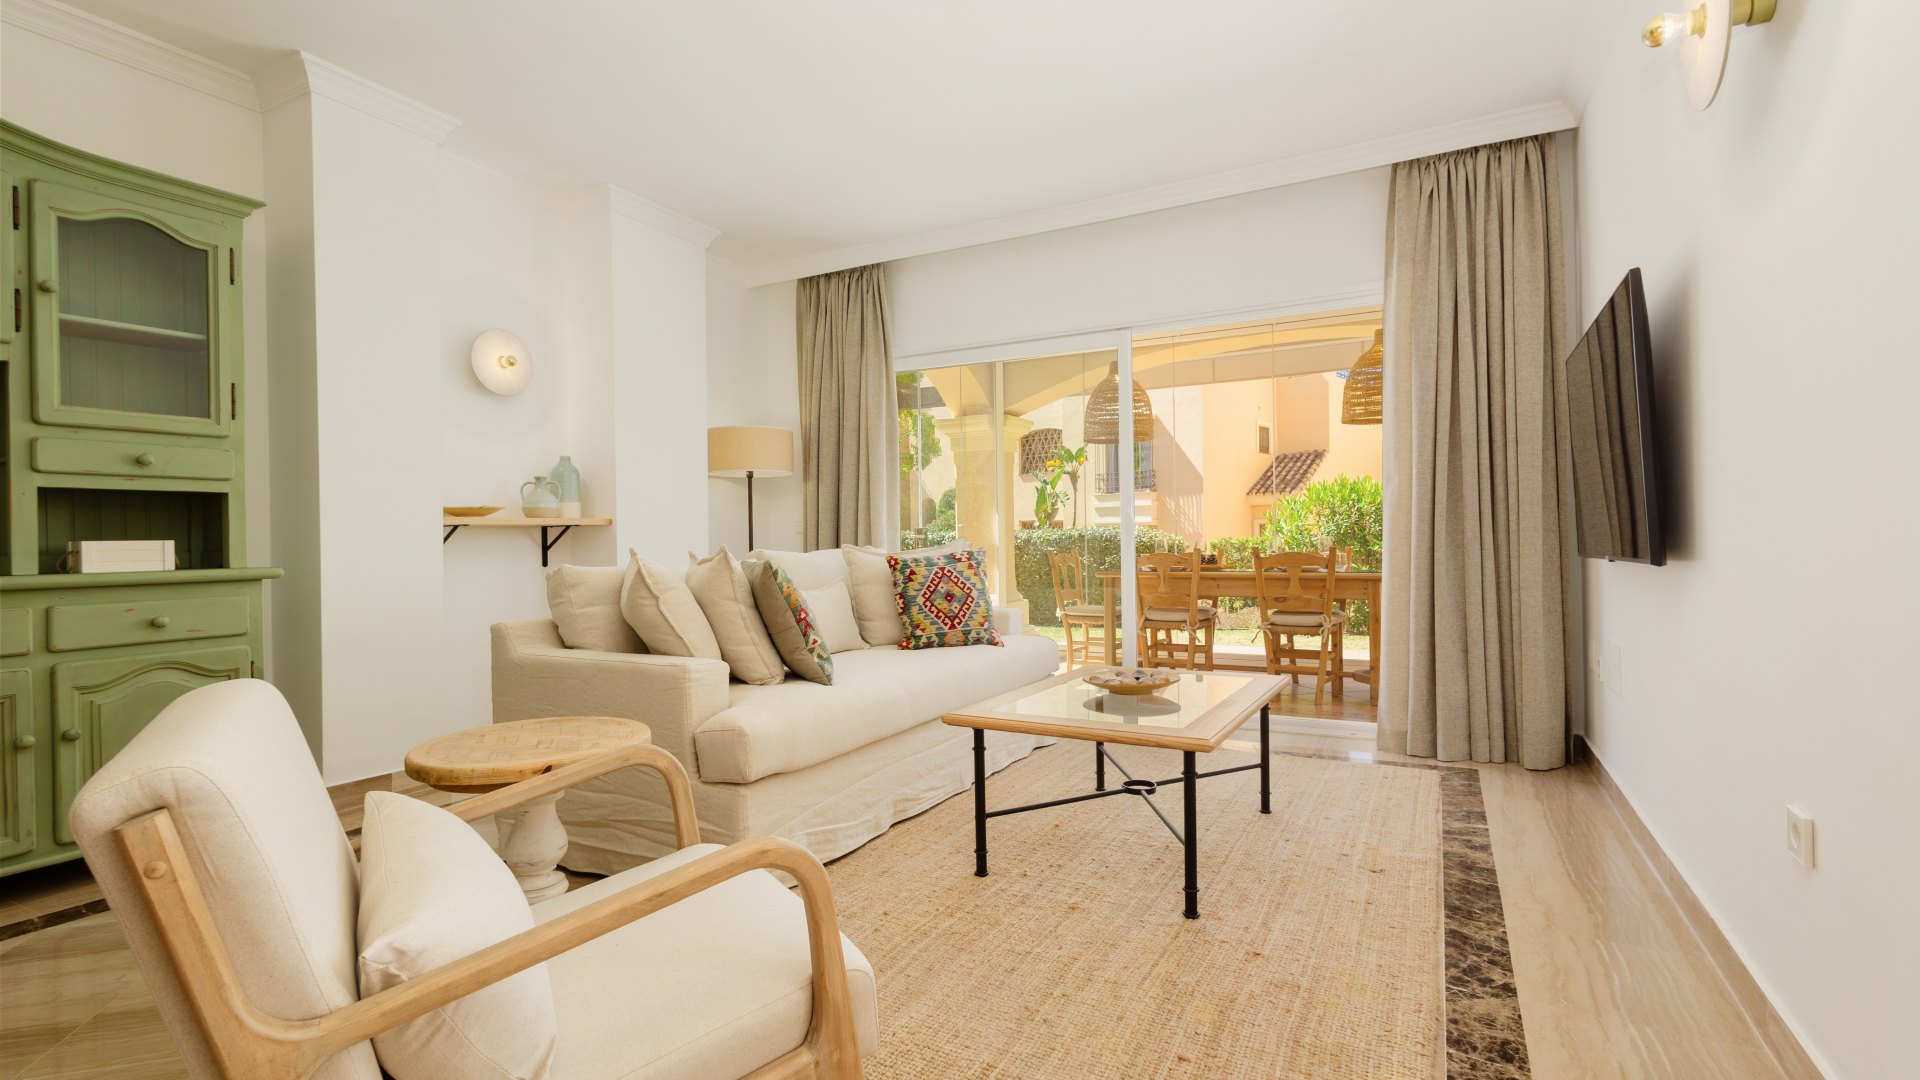 Apartamento, recién reformado y con gran terraza acristalada, cerca de la playa de Elviria, Marbella